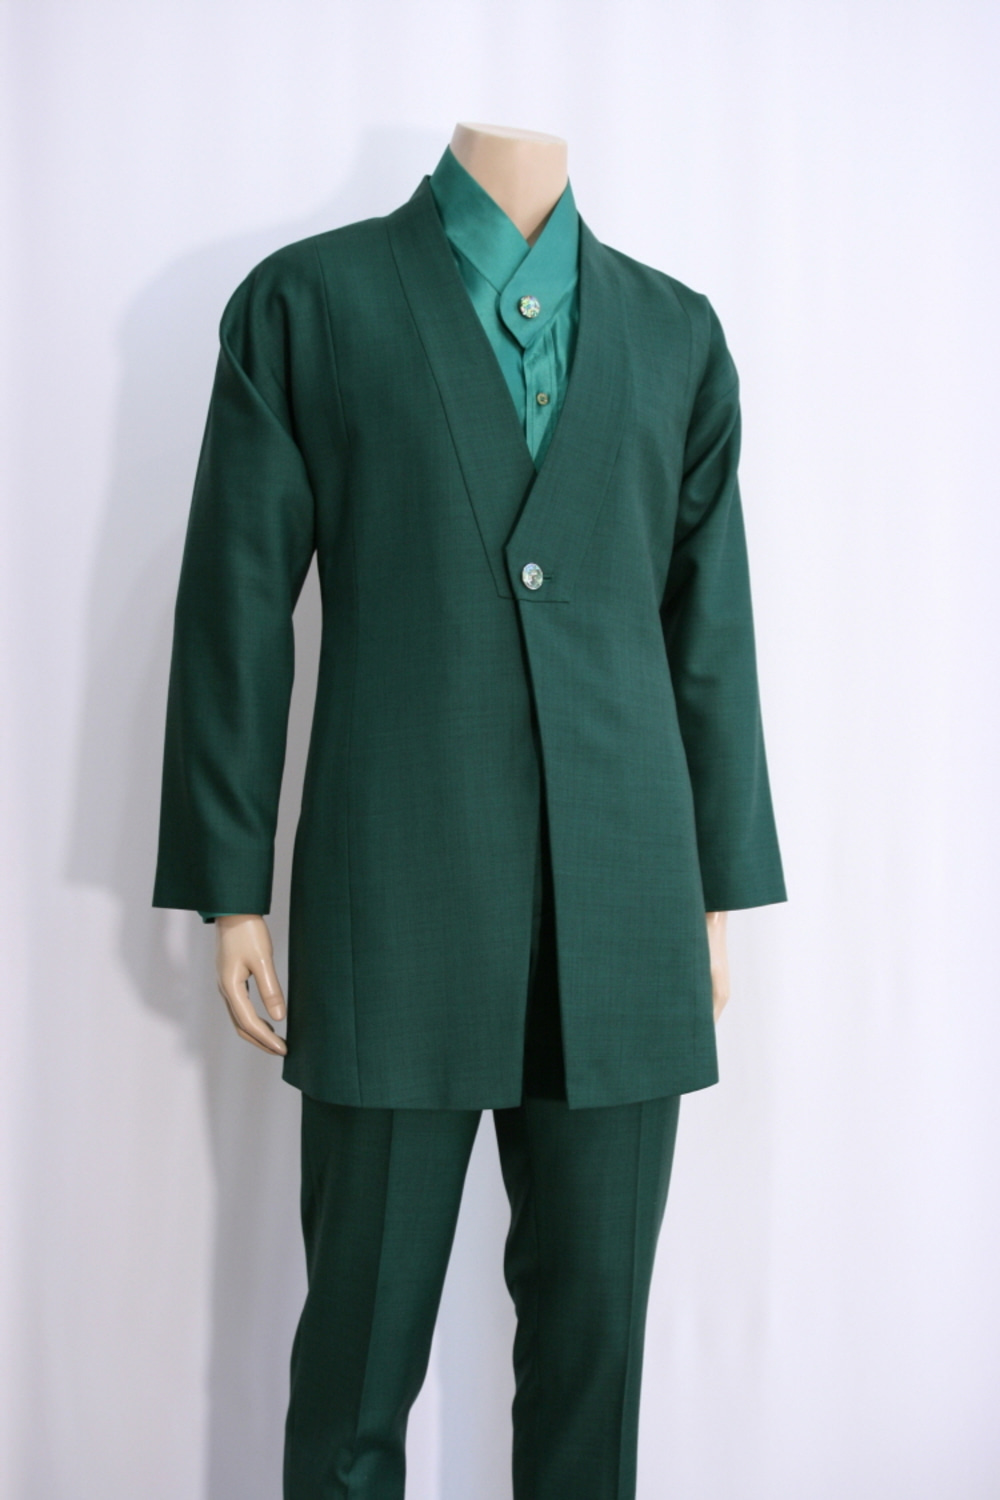 [Rental] Green Facing Collar Hanbok Suit Setup